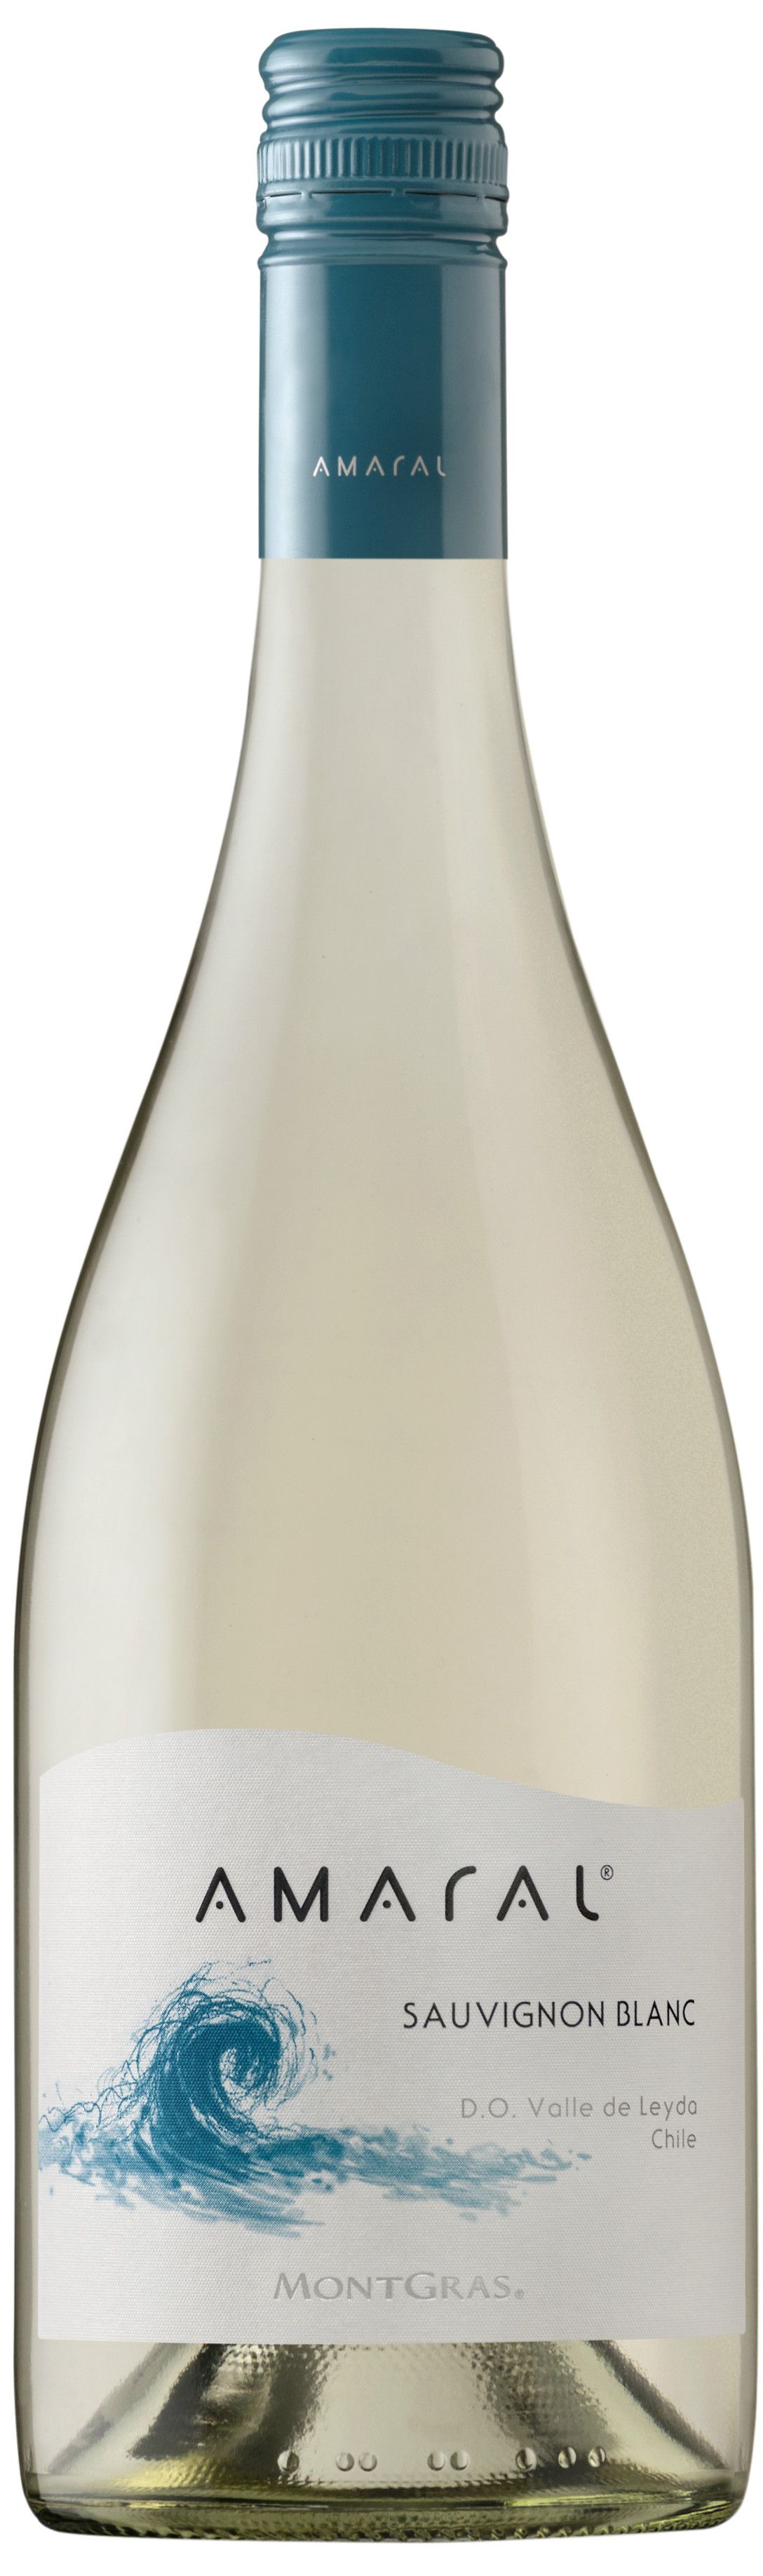 Montgras, Amaral Sauvignon Blanc, 2018